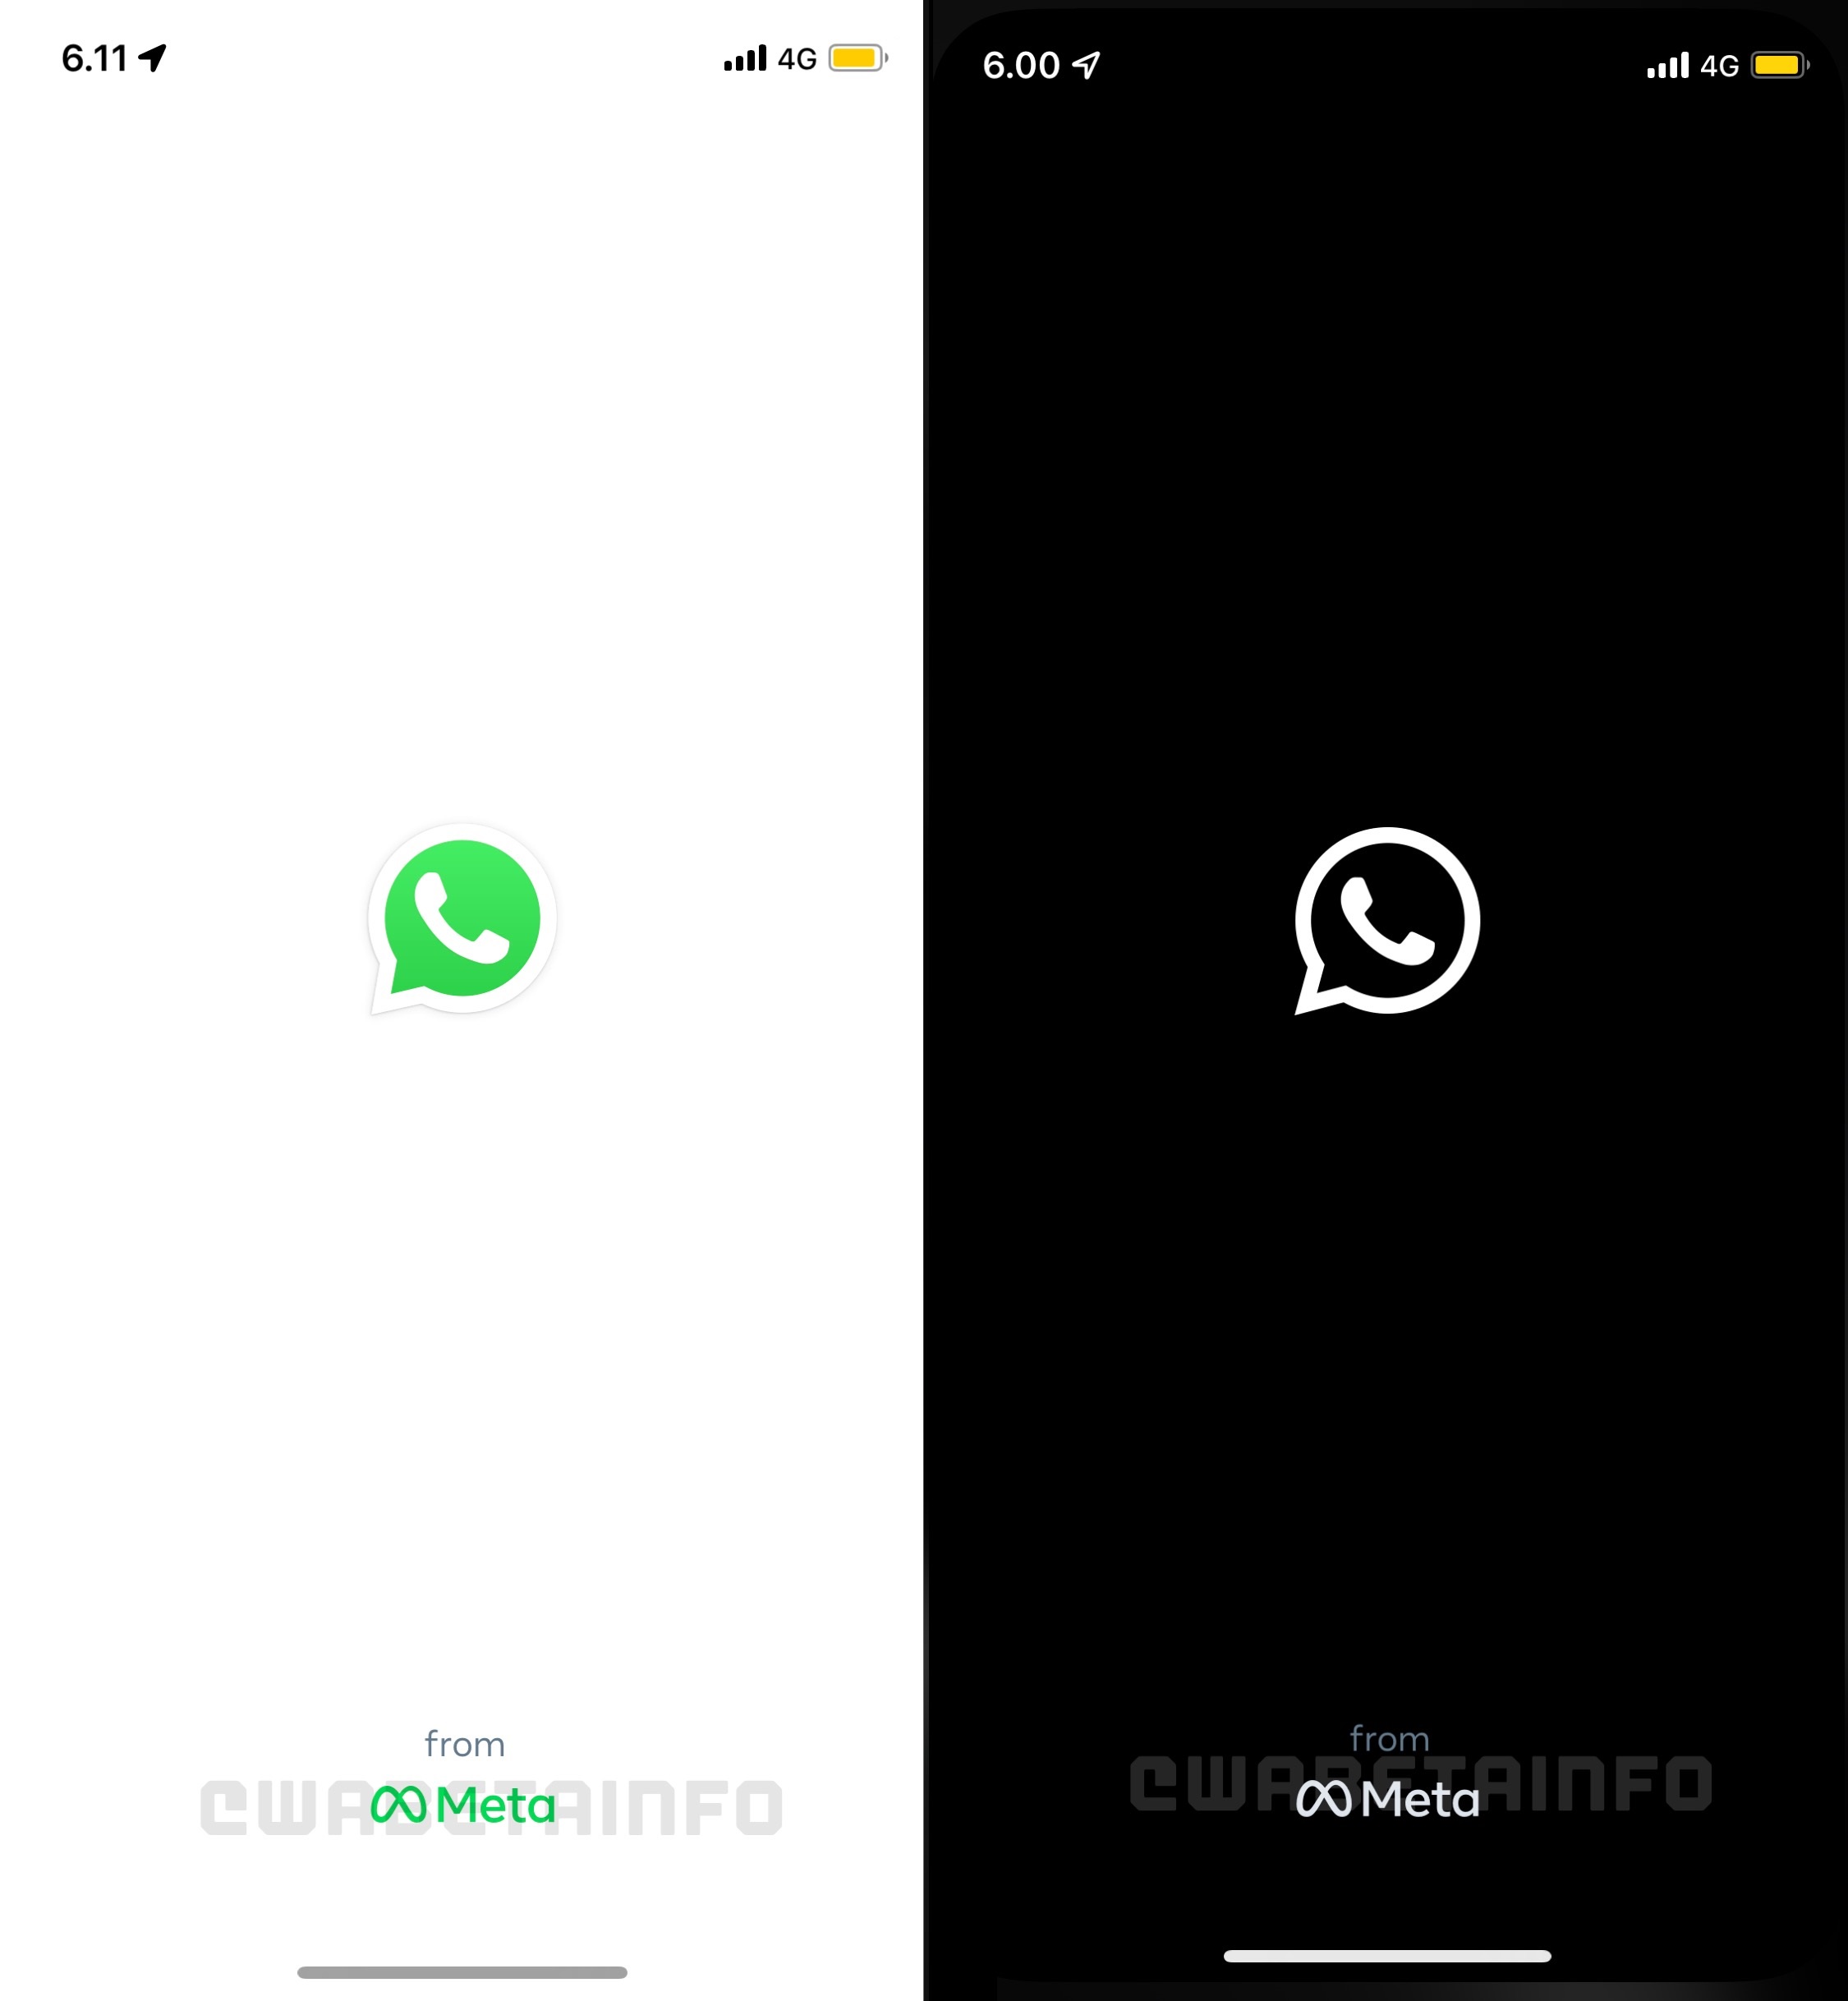 WhatsApp começa a mostrar "from Meta" em vez de "from Facebook" na tela de início (Imagem: Reprodução/WABetaInfo)